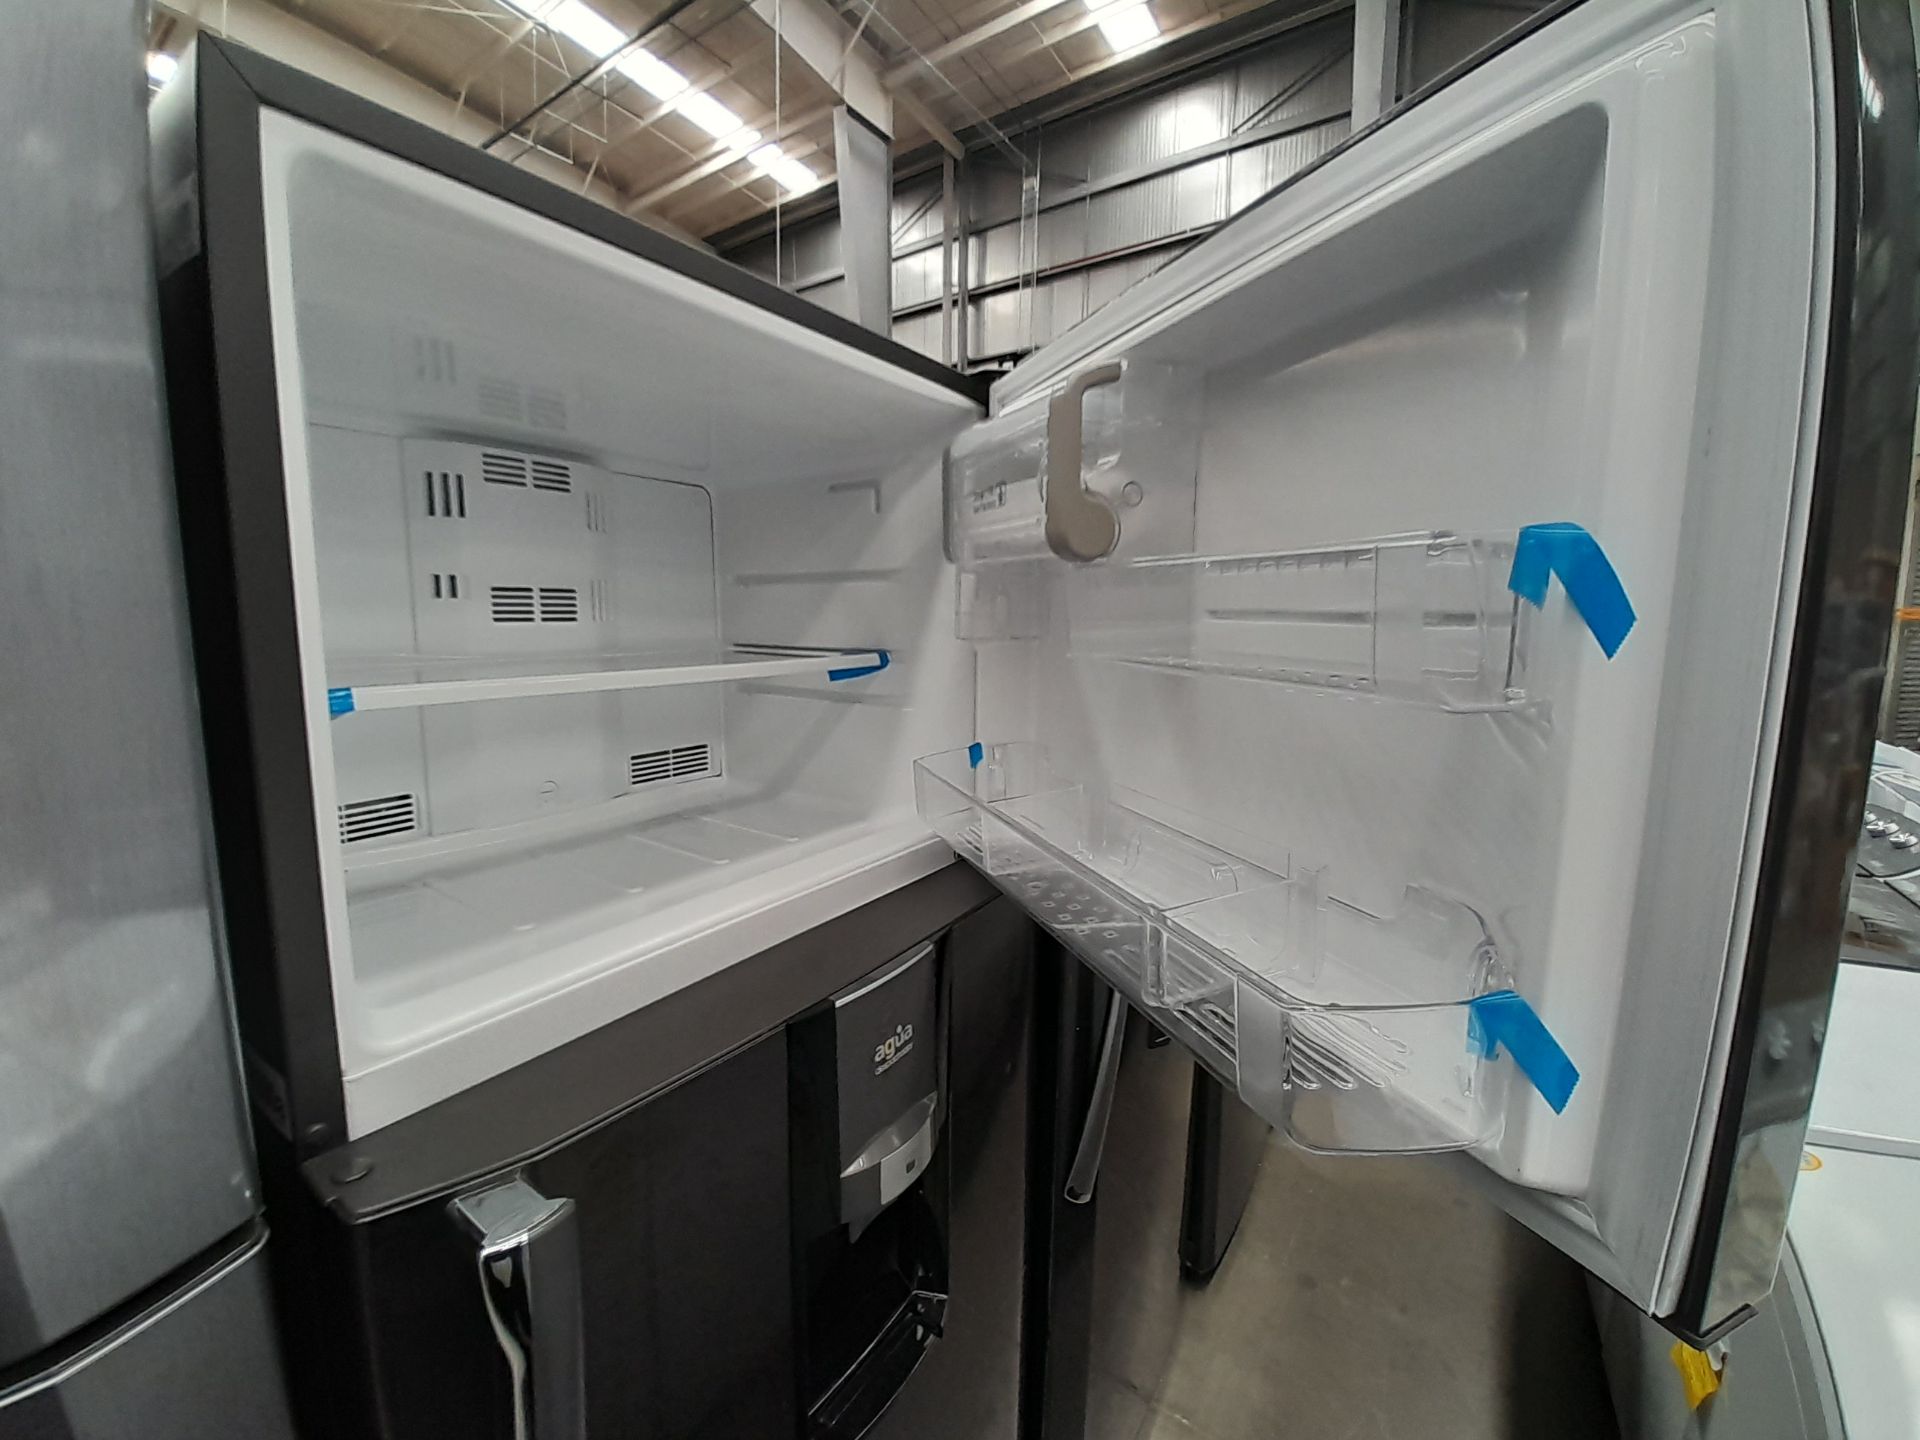 Lote de 2 refrigeradores contiene: 1 refrigerador con dispensador de agua Marca MABE, Modelo RMT510 - Image 4 of 8